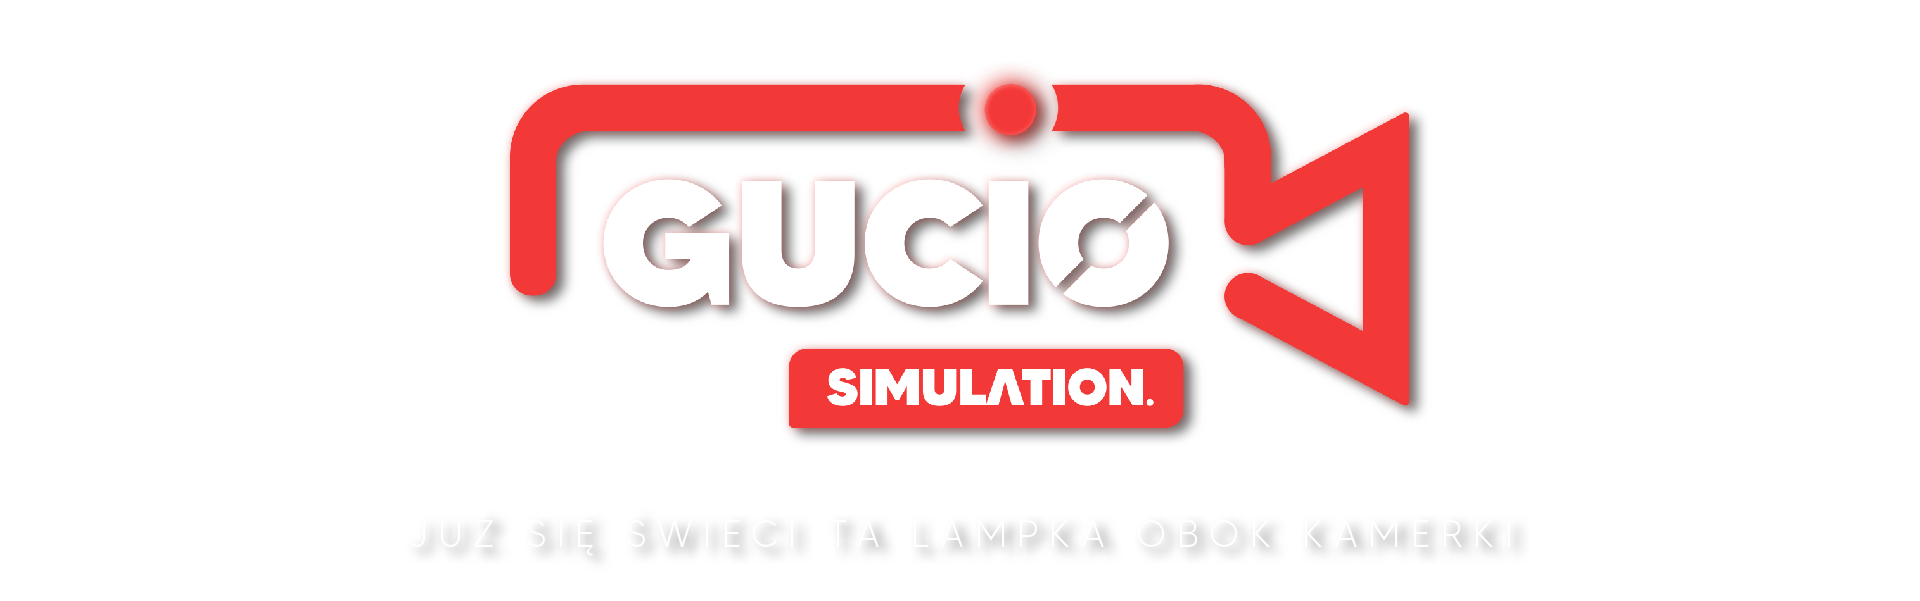 Gucio: Simulation